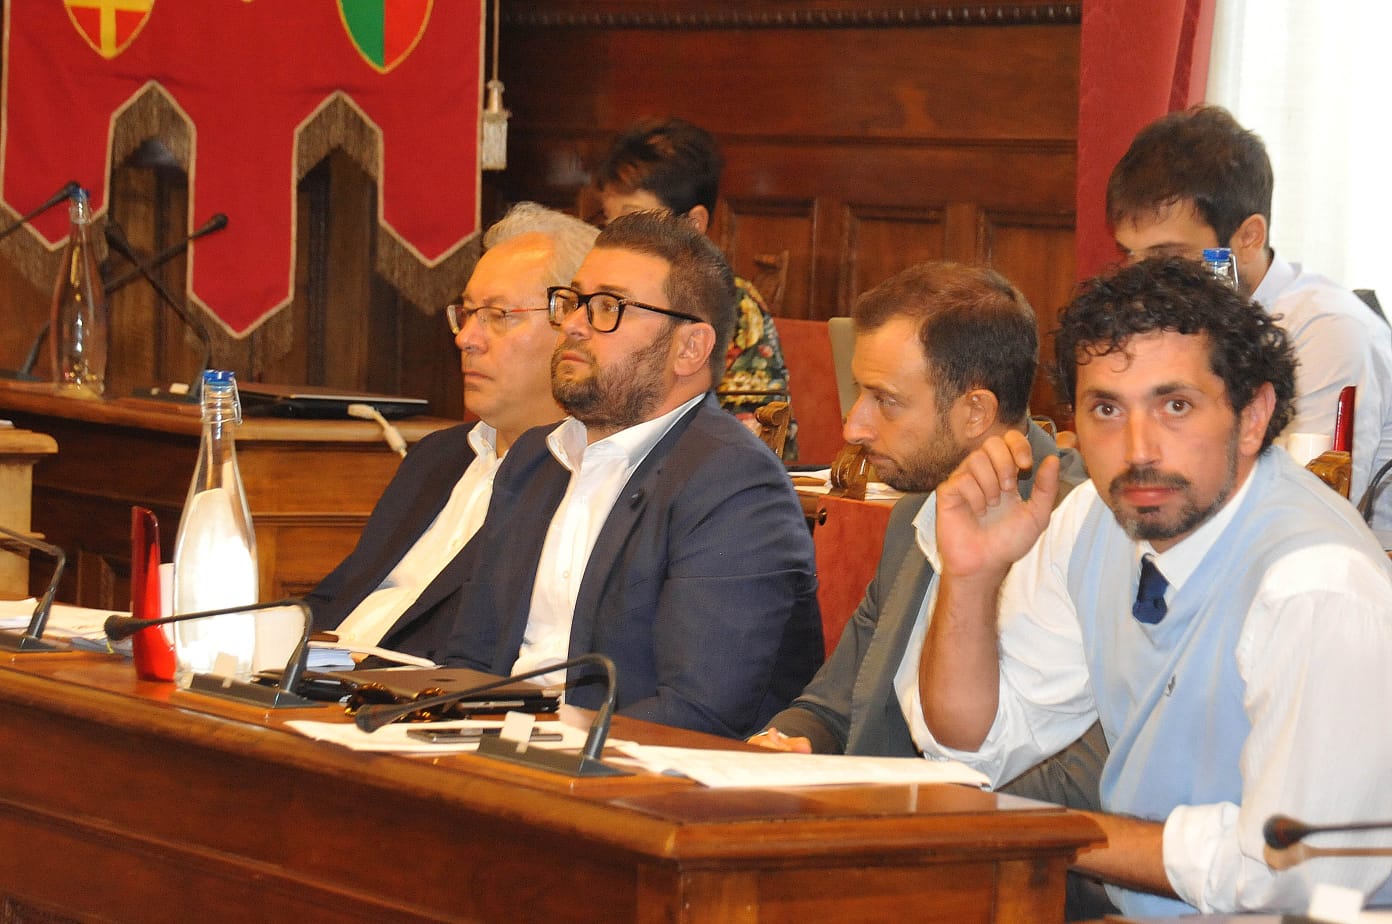 Ralli ancora all’attacco: “nel Consiglio comunale di martedì discutiamo del futuro di Arezzo. In esso non c’è più posto per Ghinelli”